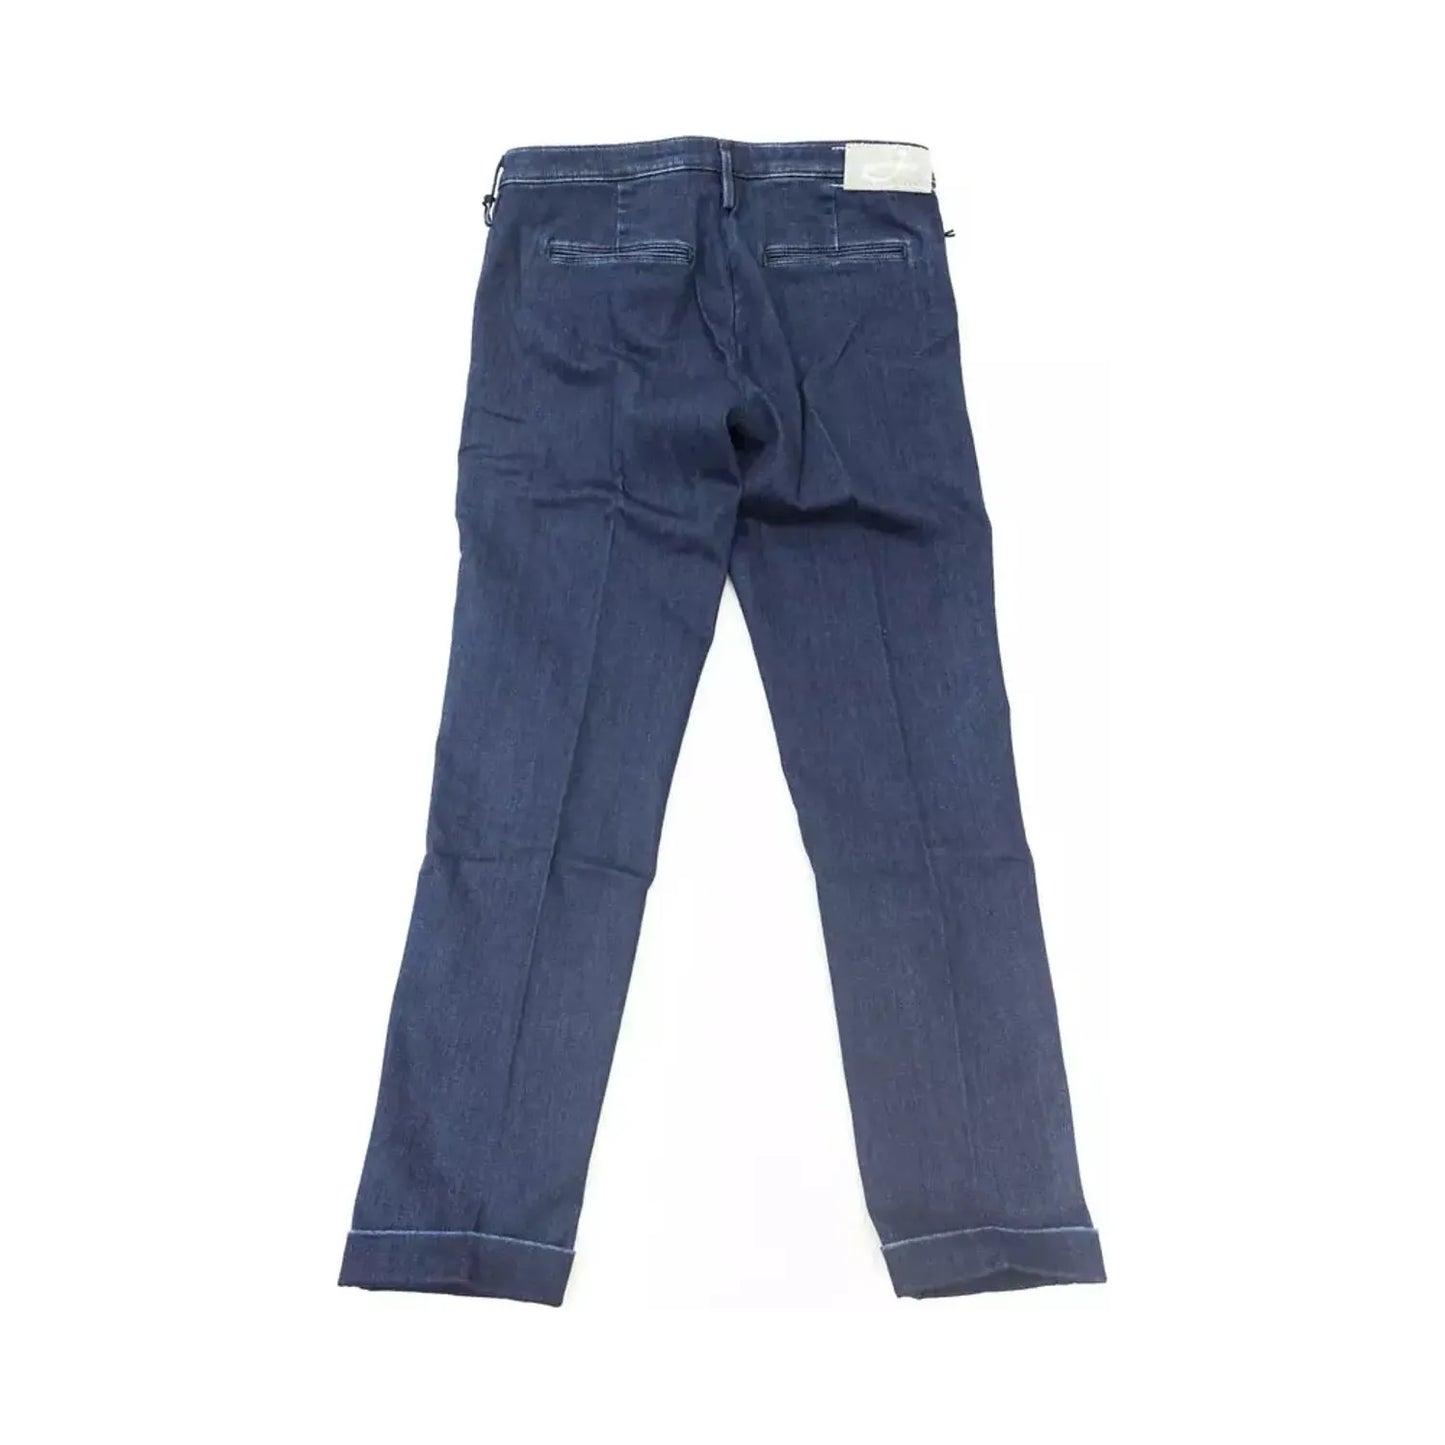 Jacob Cohen Elegant Slim-Fit Chino Jeans blue-cotton-jeans-pant-42